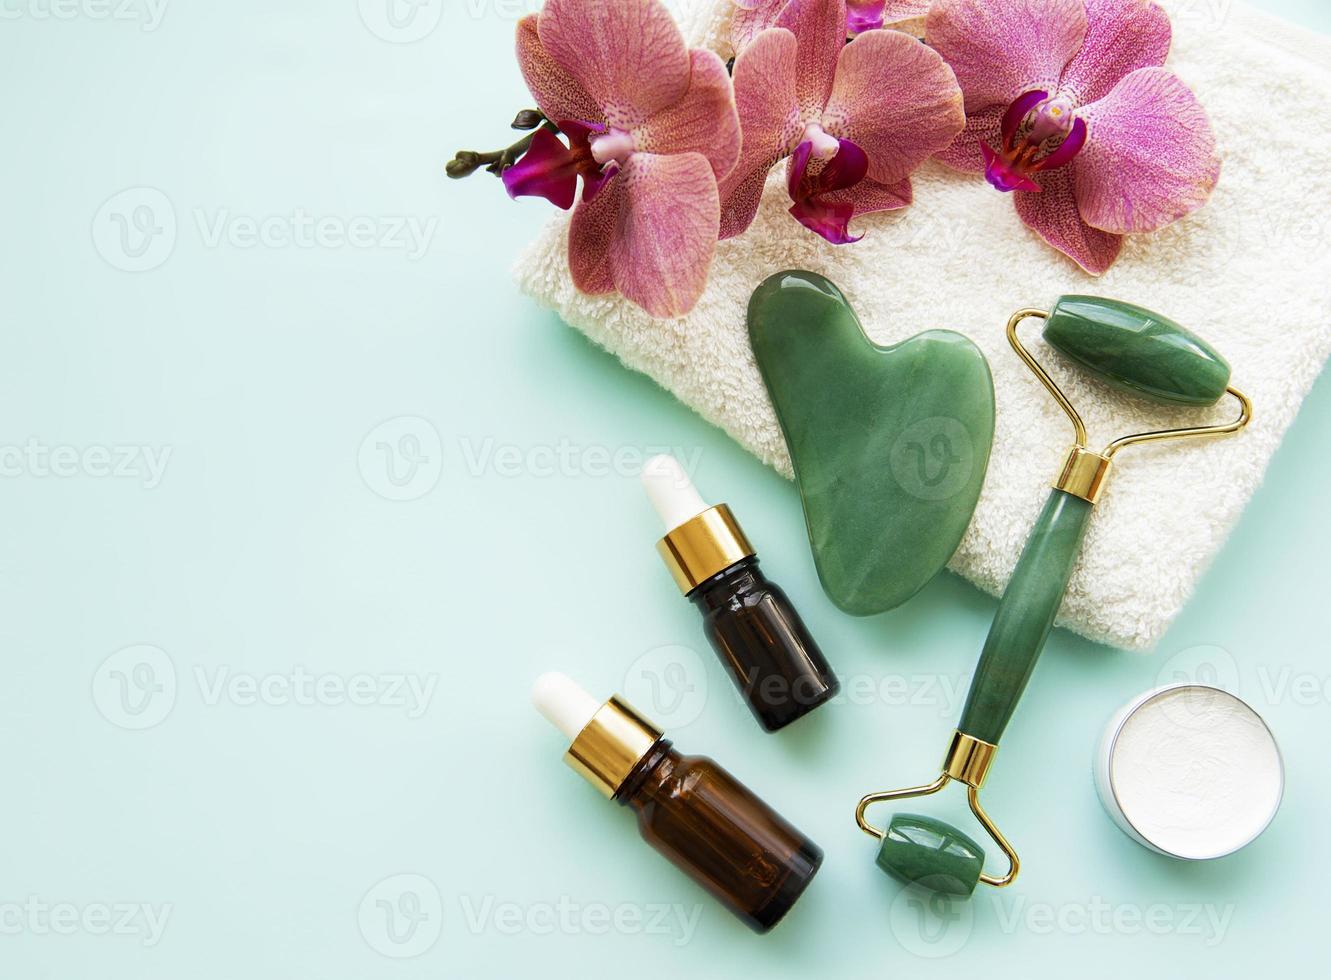 Gesichtsmassage-Jadewalze auf pastellgrünem Hintergrund foto